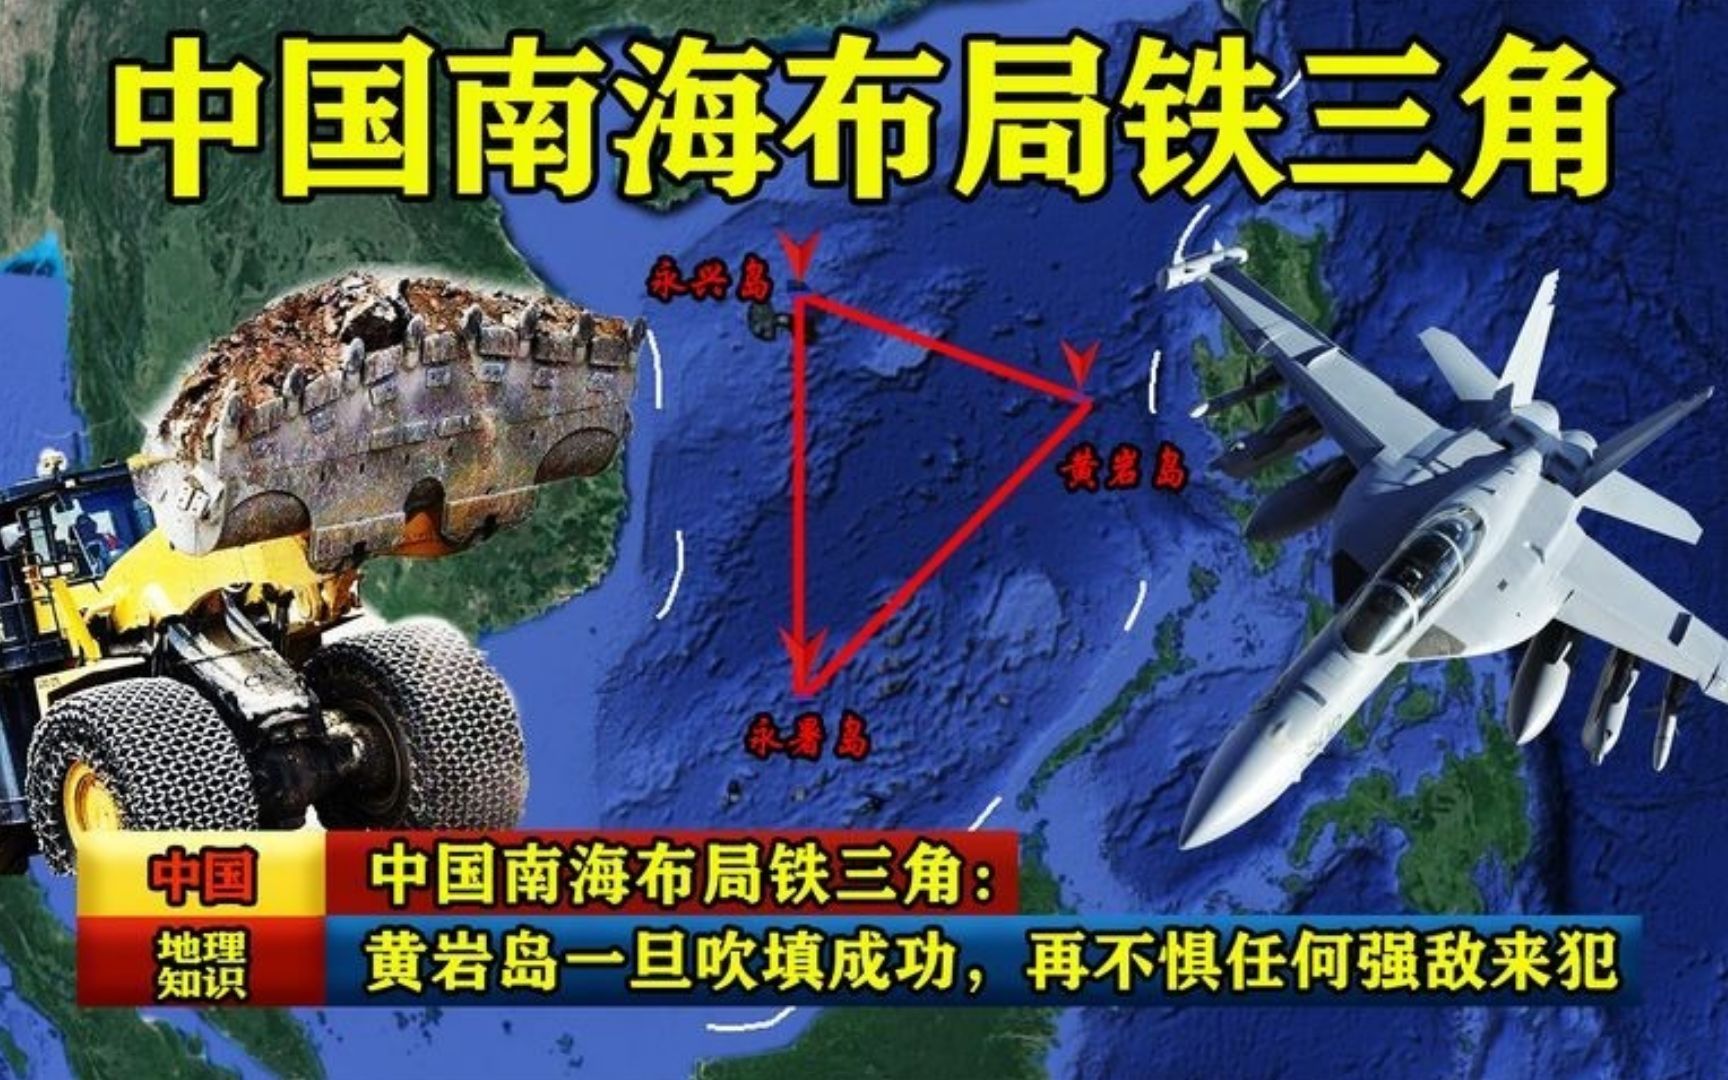 中国要填黄岩岛？已设300米浮标打围，美菲正商议，扩大军事部署 -6parkbbs.com